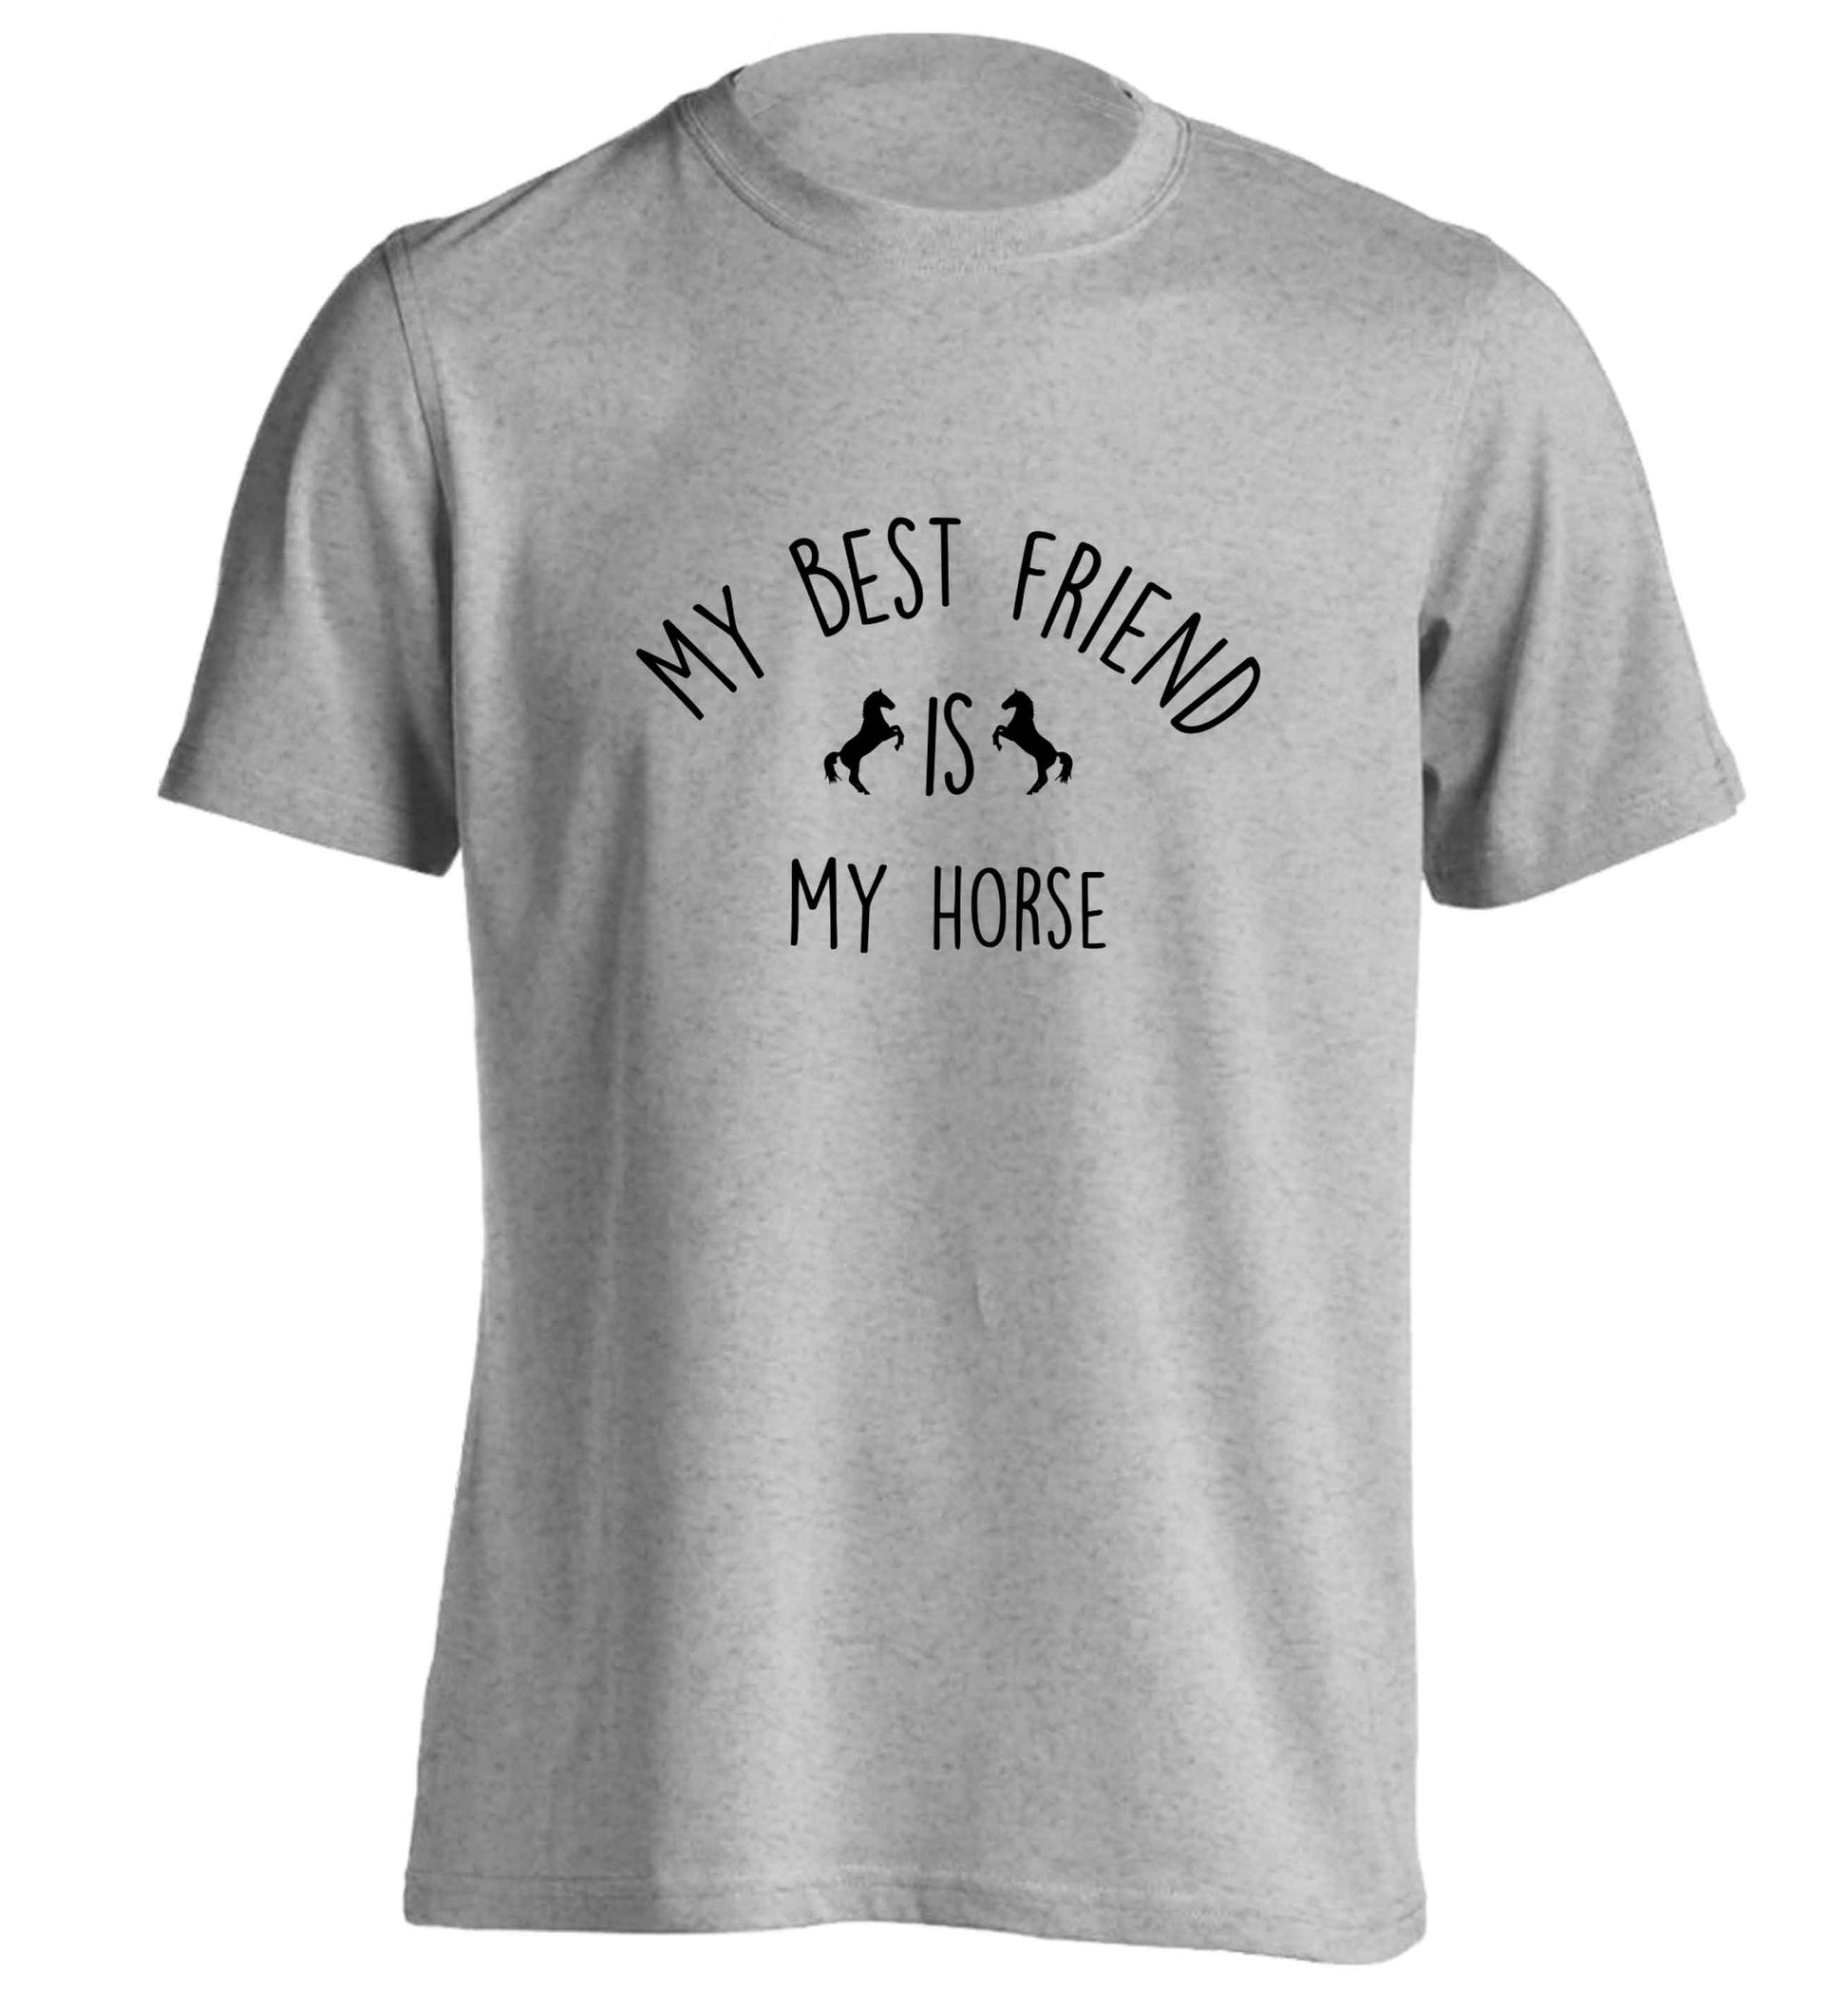 My best friend is my horse adults unisex grey Tshirt 2XL